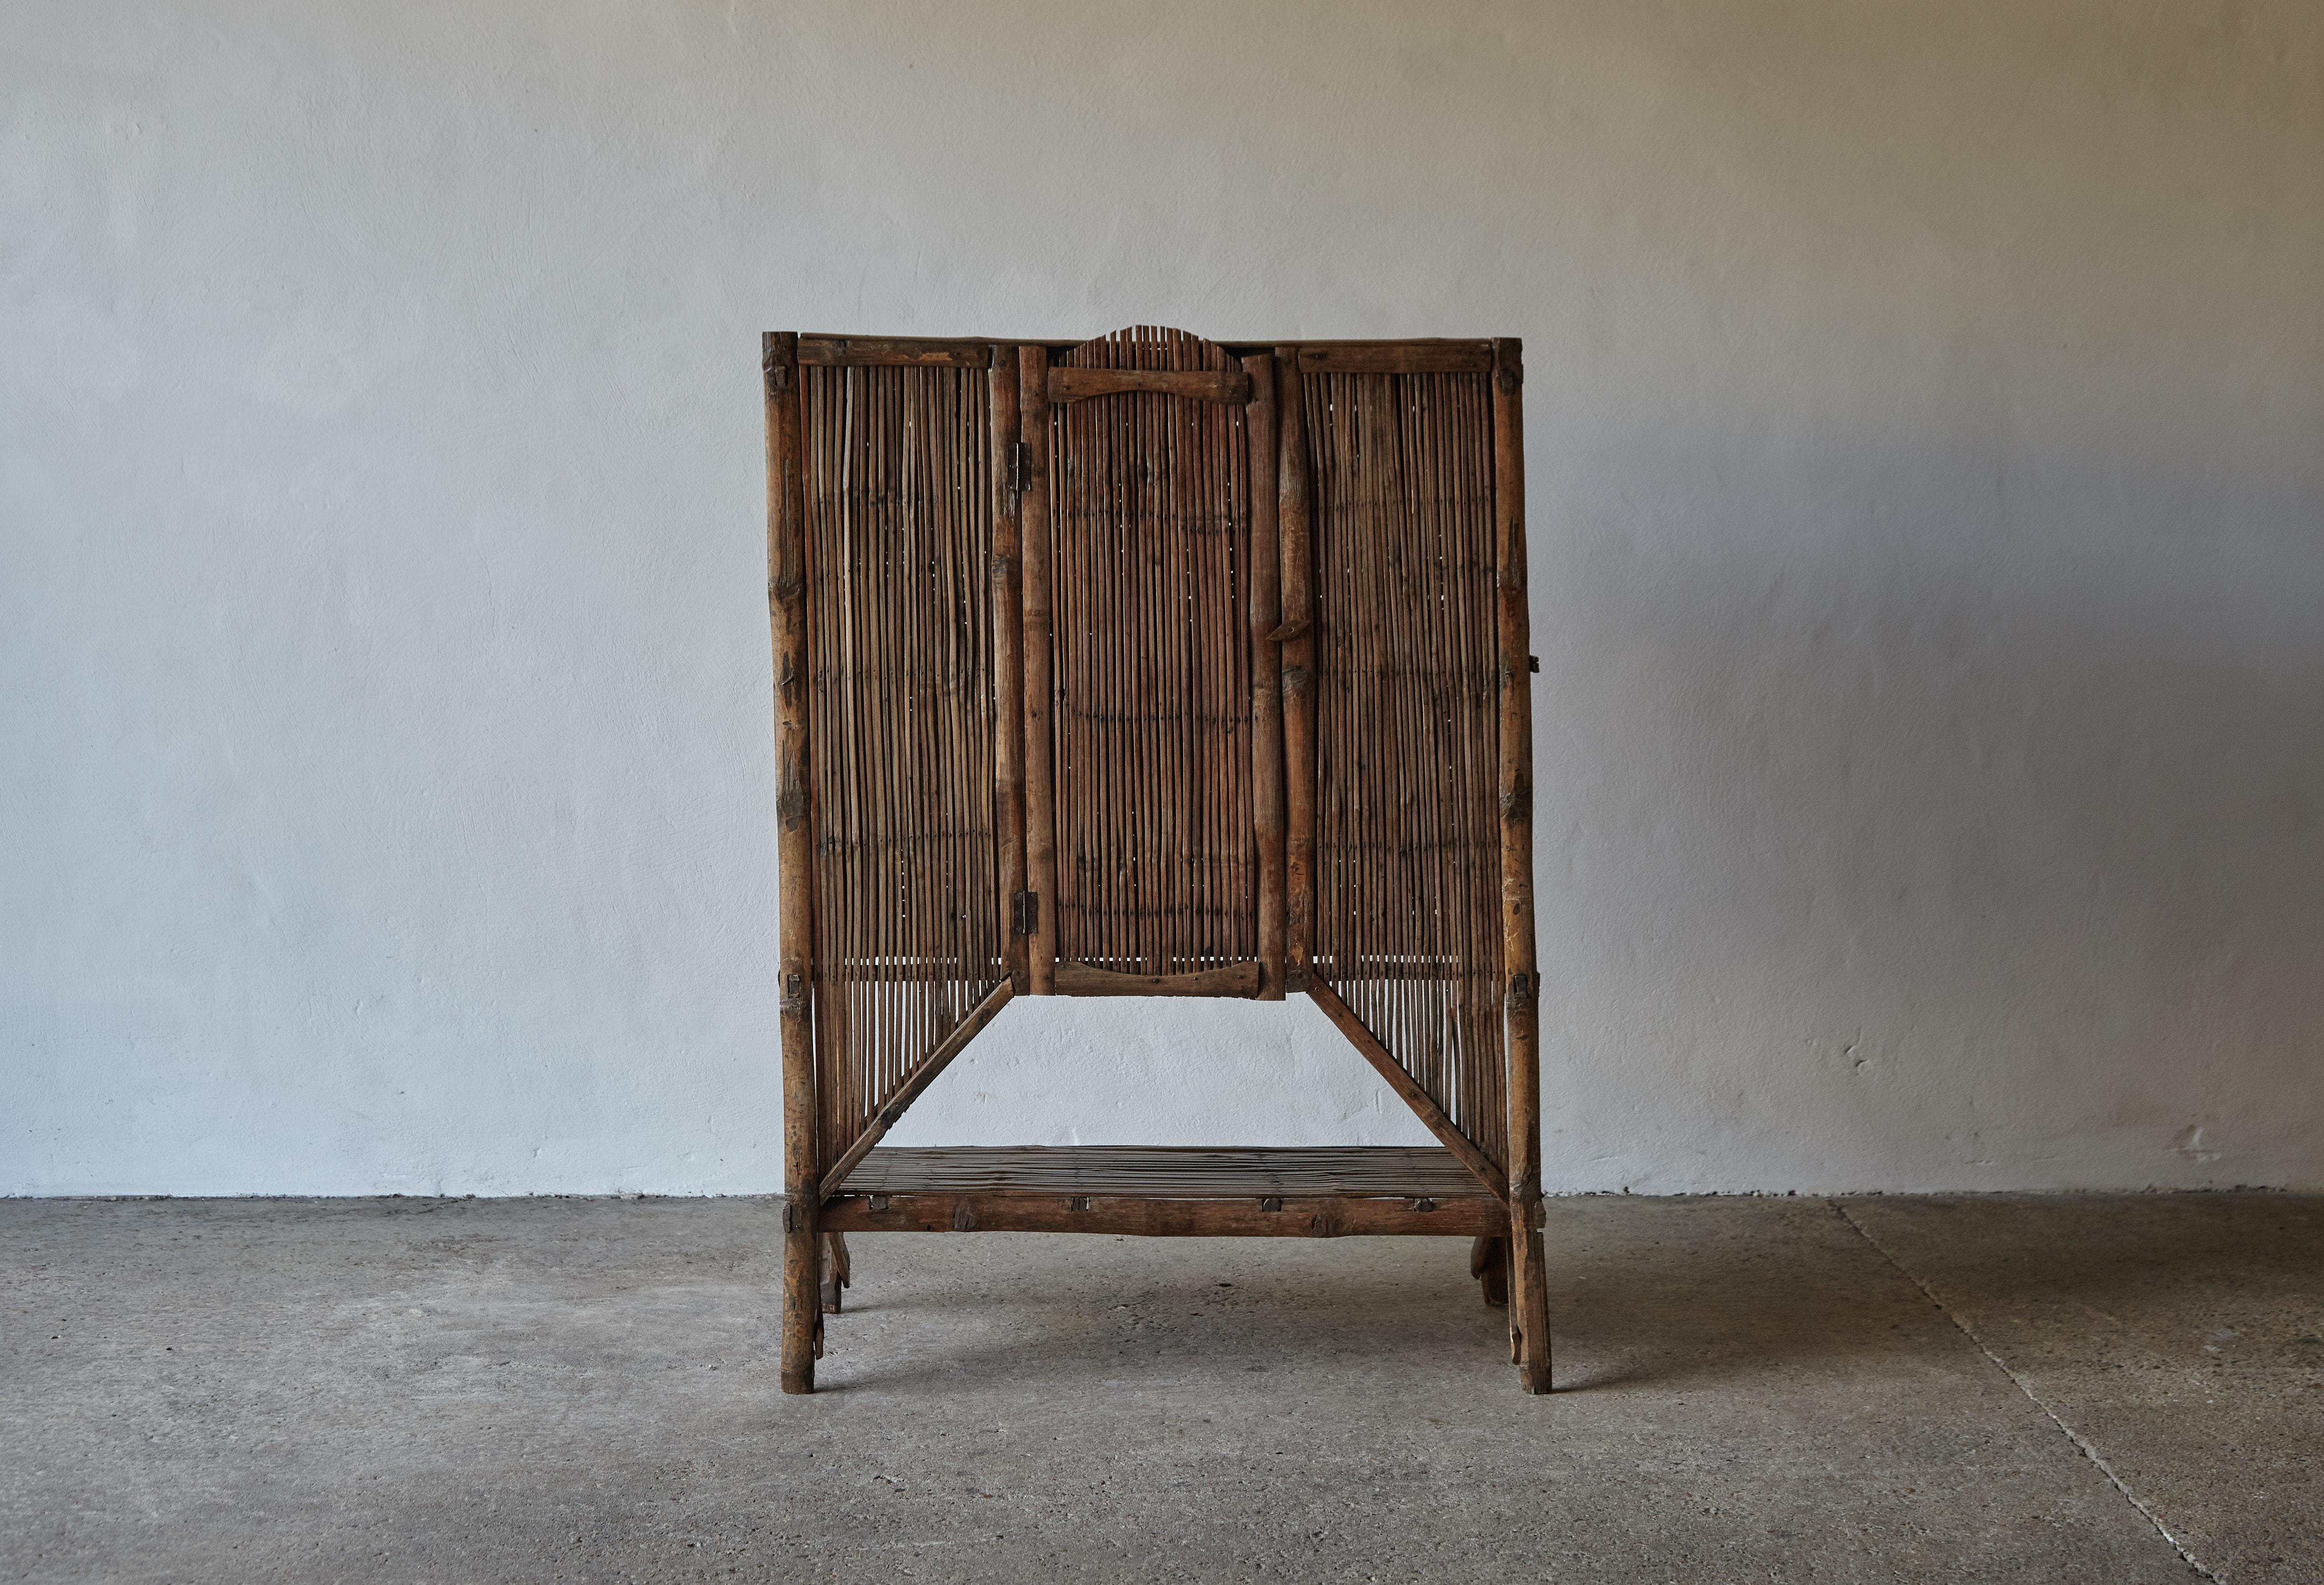 Ein ungewöhnliches und auffälliges Bambusgehäuse im Originalzustand mit einem tollen Klang und Patina. Ziemlich empfindlich in der Konstruktion, daher wahrscheinlich nicht für den harten Einsatz geeignet. Alters- und gebrauchsbedingte